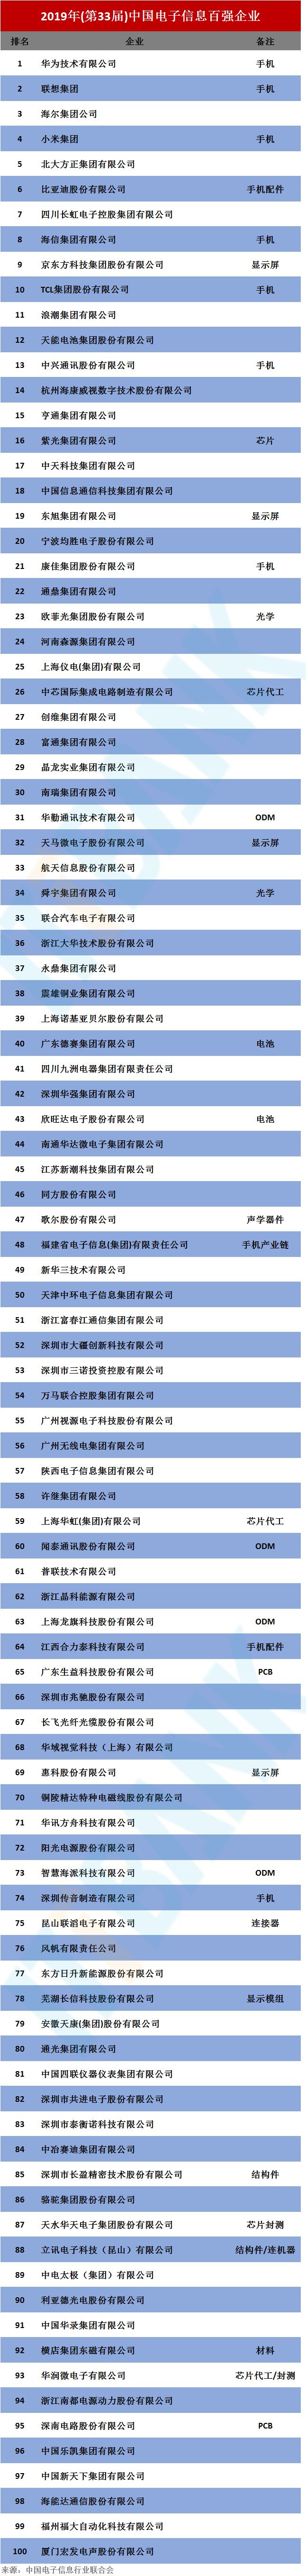 2019中国电子信息百强企业排名